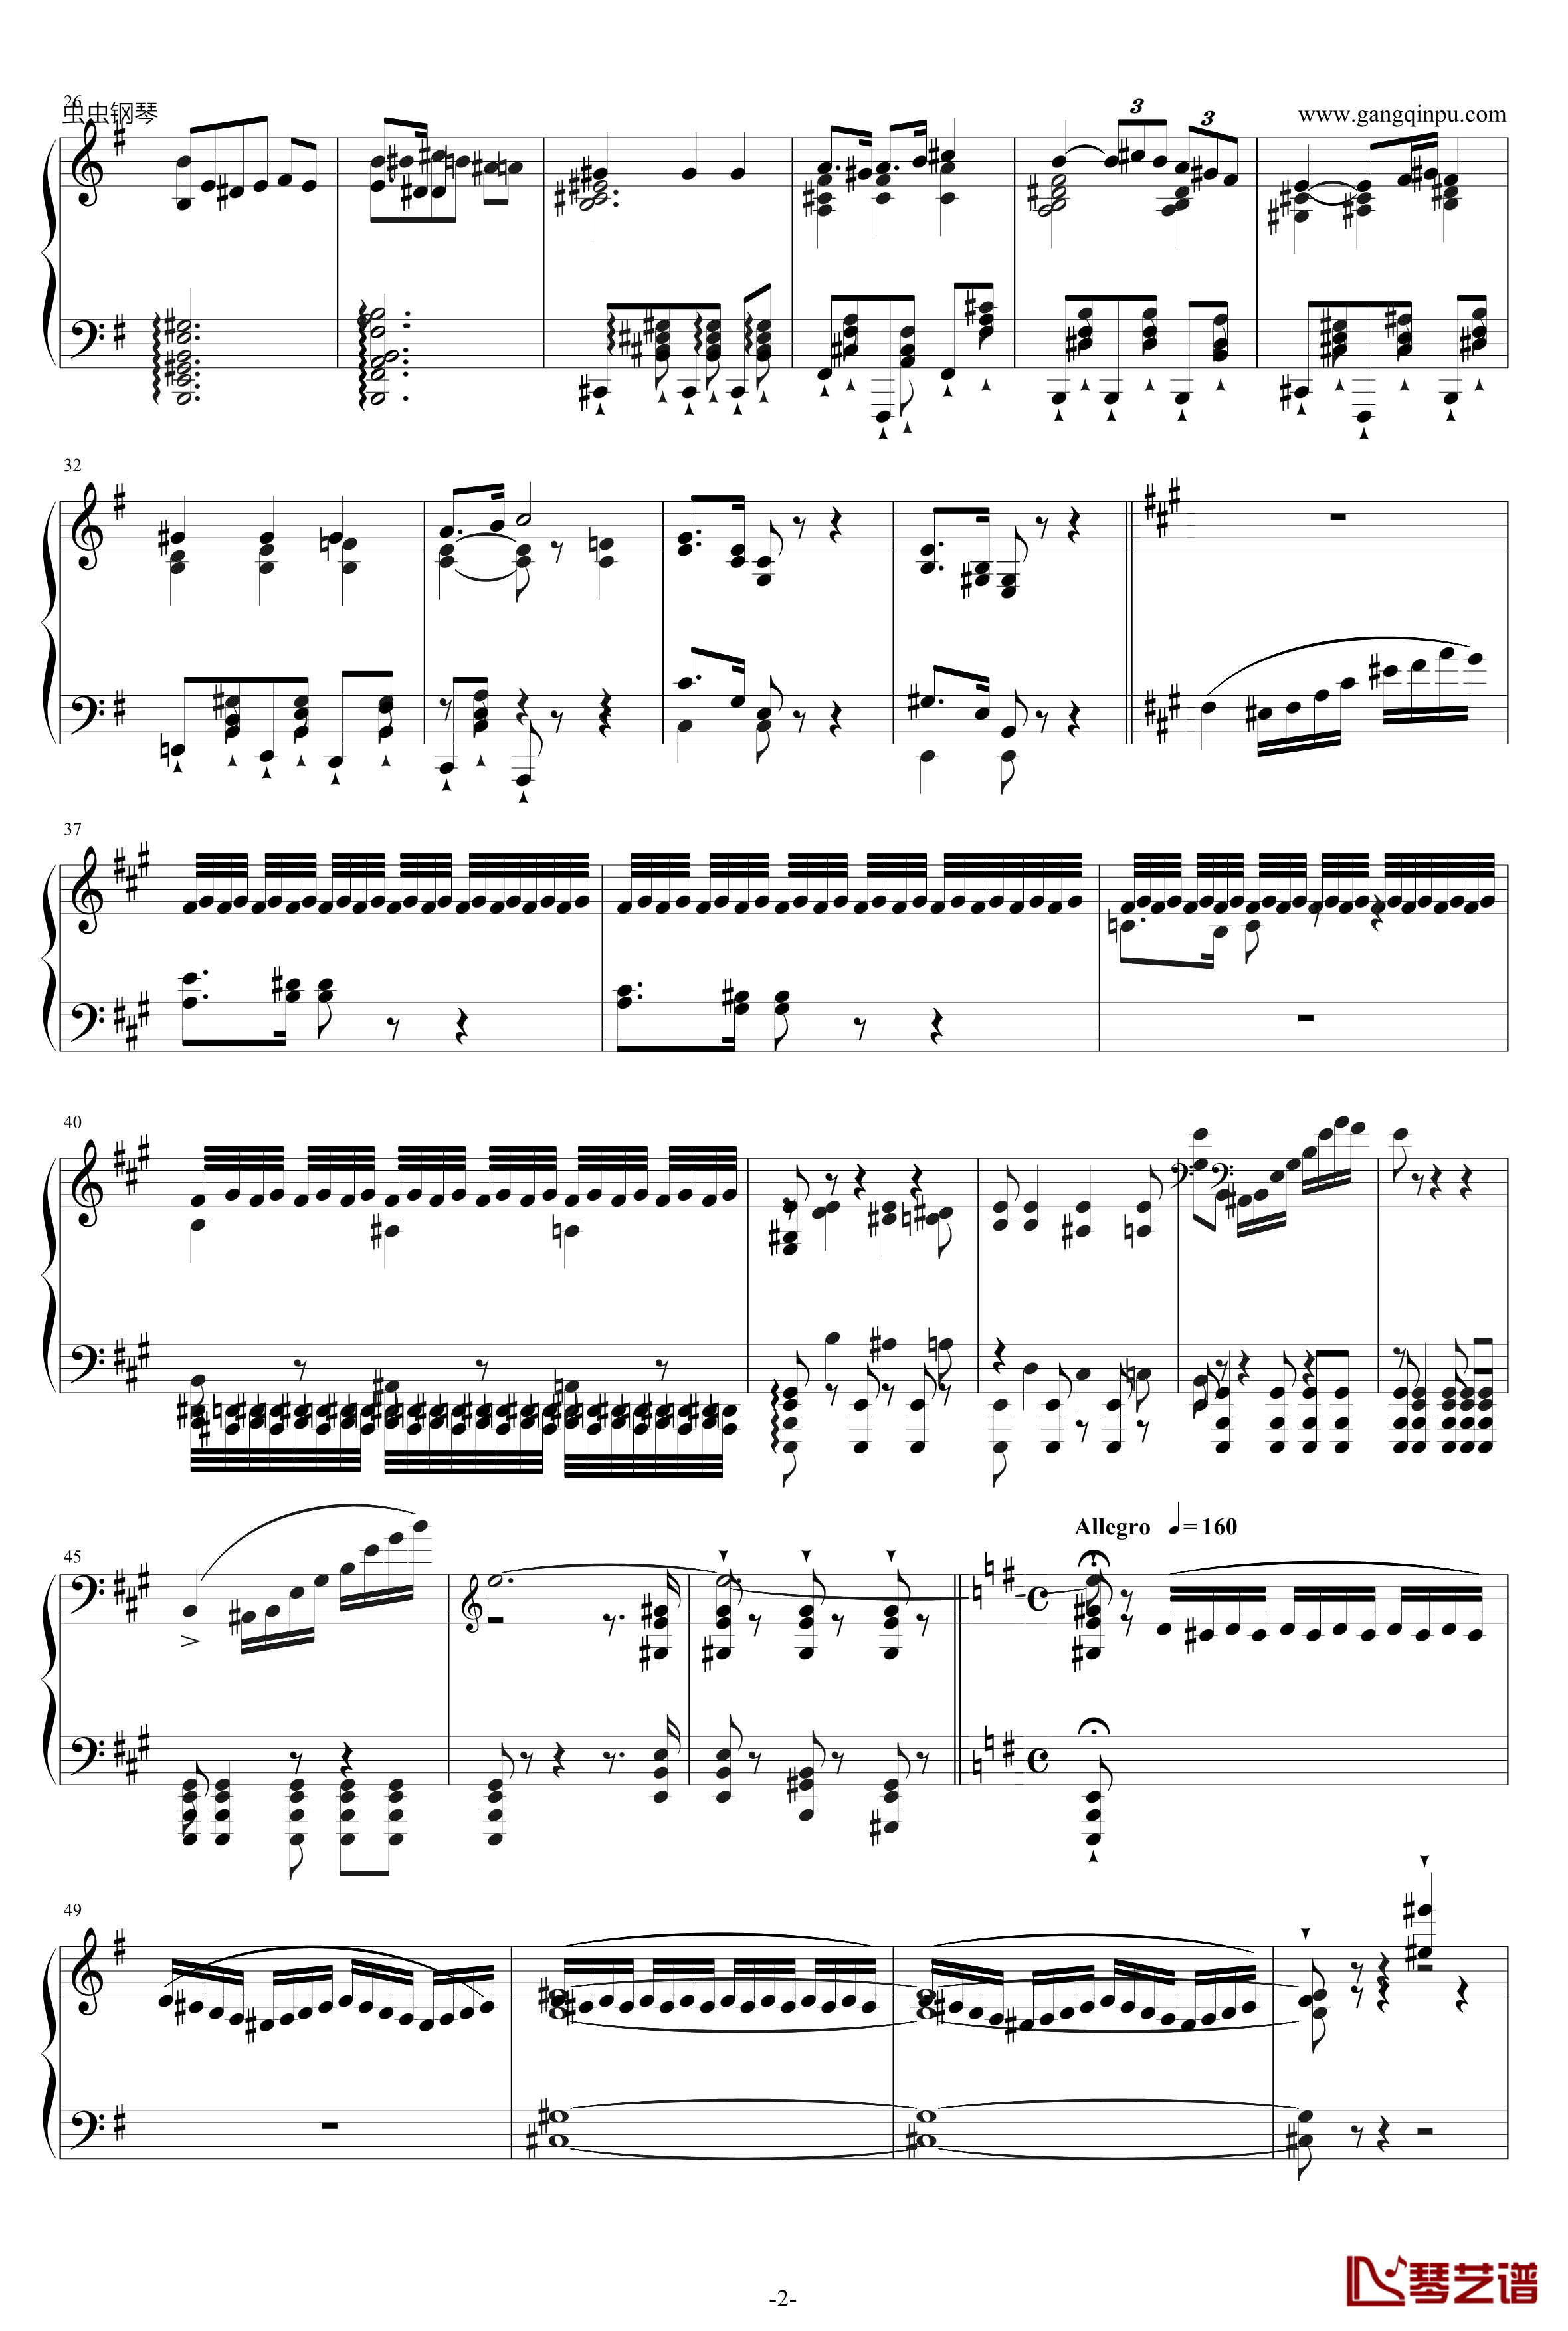 威廉·退尔序曲钢琴谱-李斯特S.5522